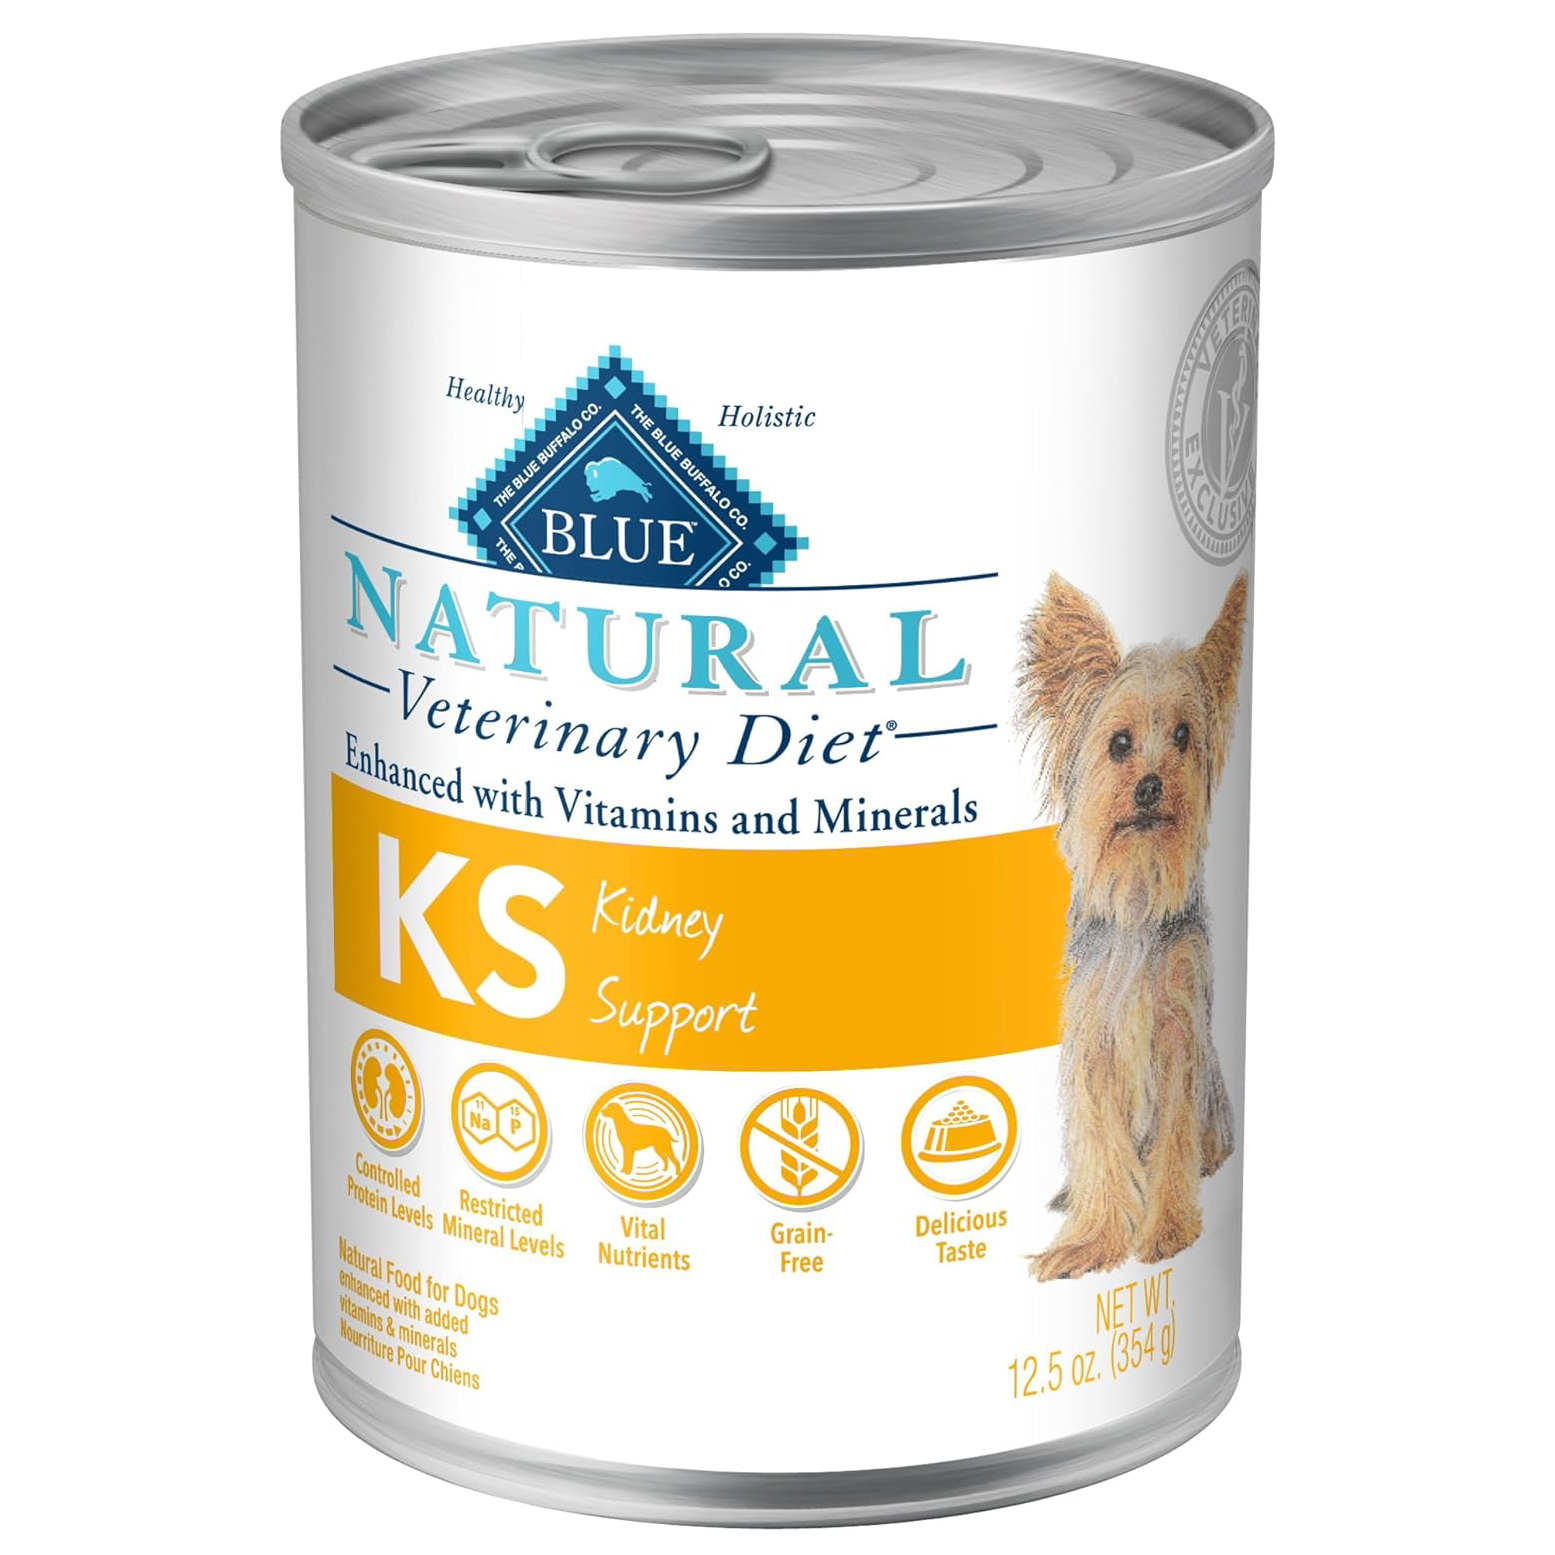 Blue Buffalo Natural Veterinary Diet KS Kidney Support